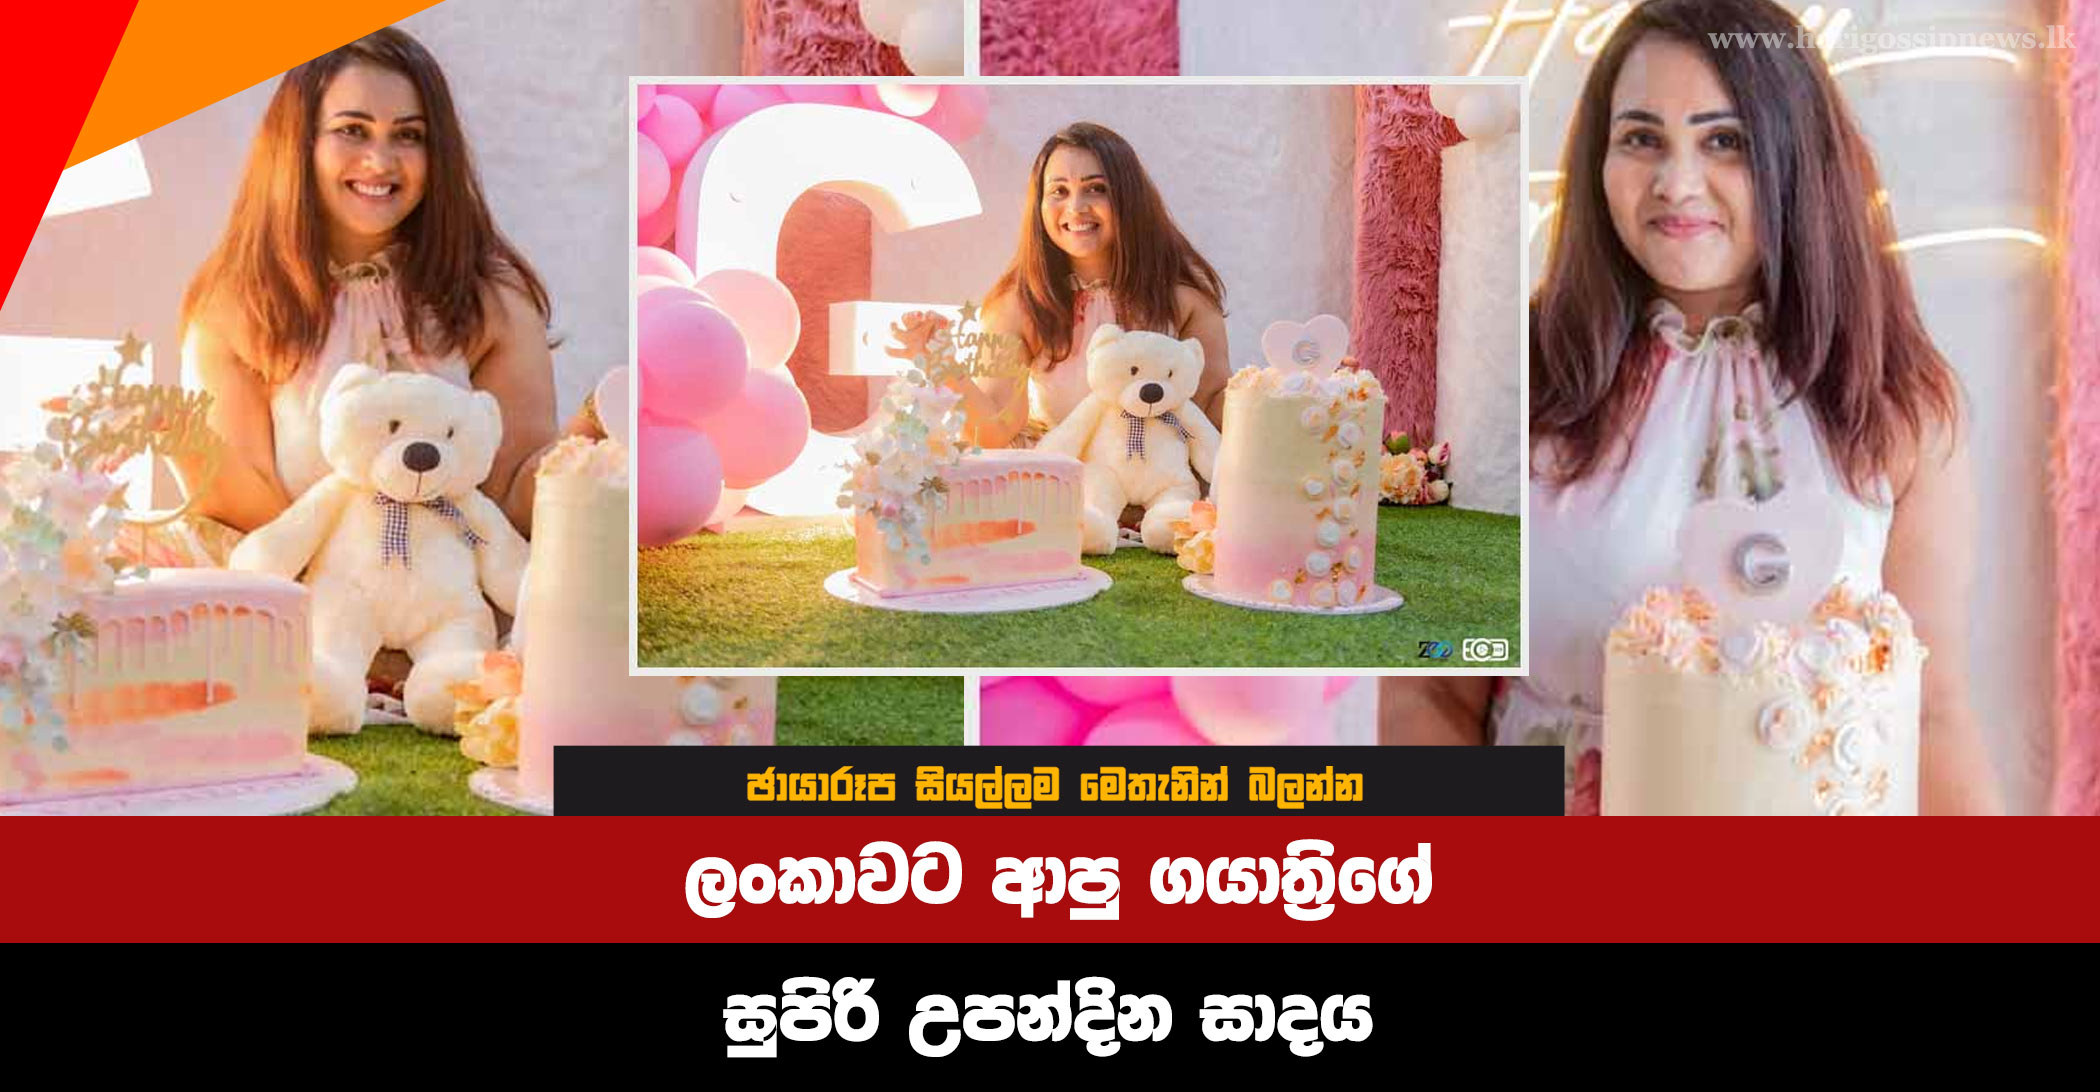 Gayathri's-Super-Birthday-Party-In-Sri-Lanka